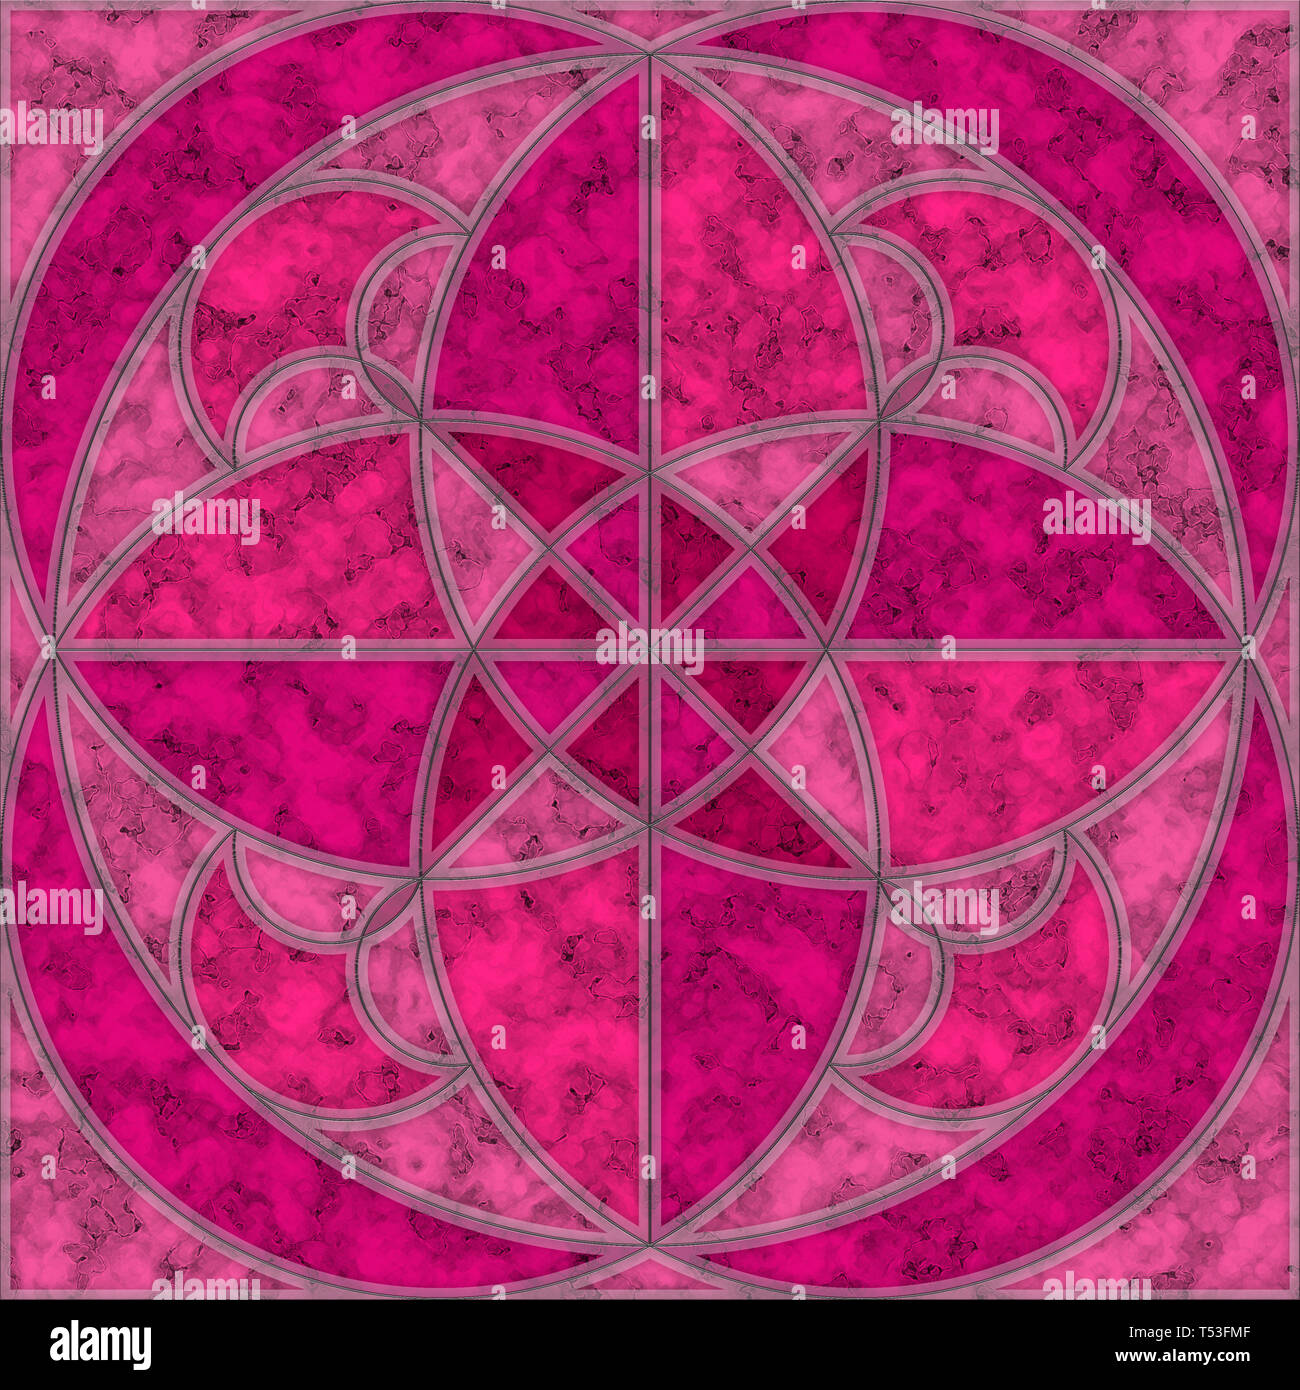 Rosa, Violett und Magenta Marmor Fliesen mit runden geometrischen Muster  Stockfotografie - Alamy